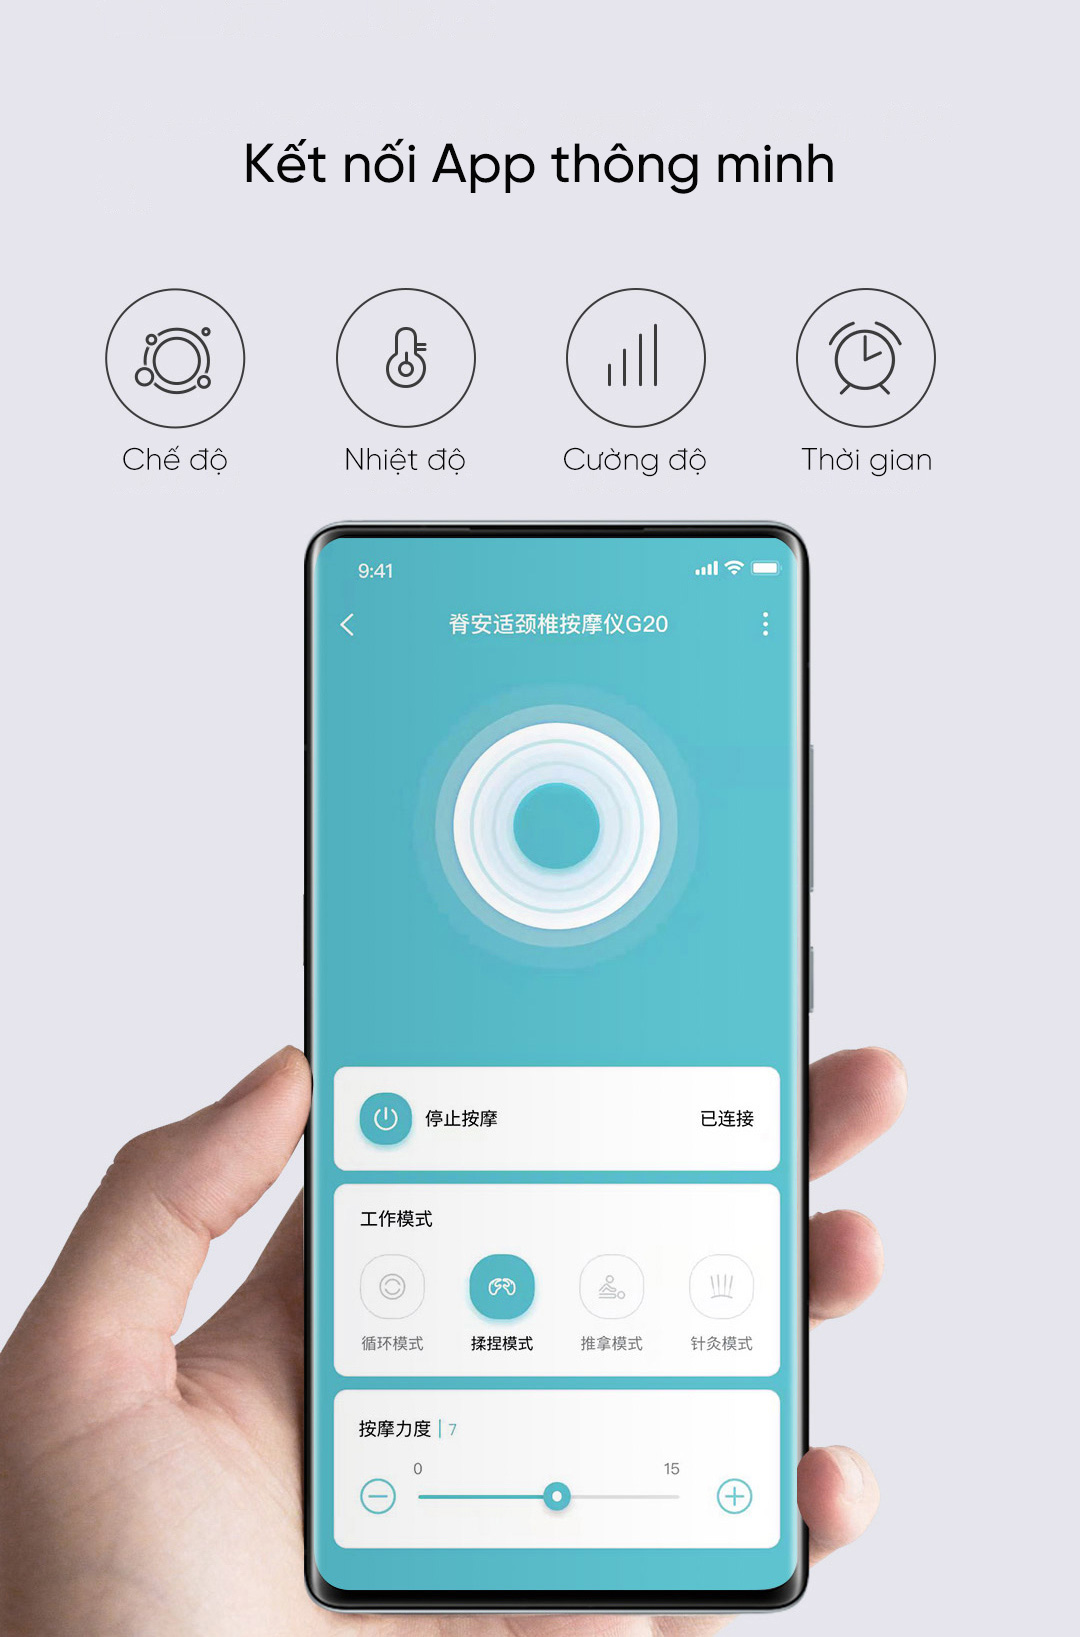 Bạn có thể điều khiển từ xa bật/tắt, theo dõi nhiệt độ, chế độ, cường độ và thời gian hoạt động của máy thông qua kết nối app Mijia thông minh